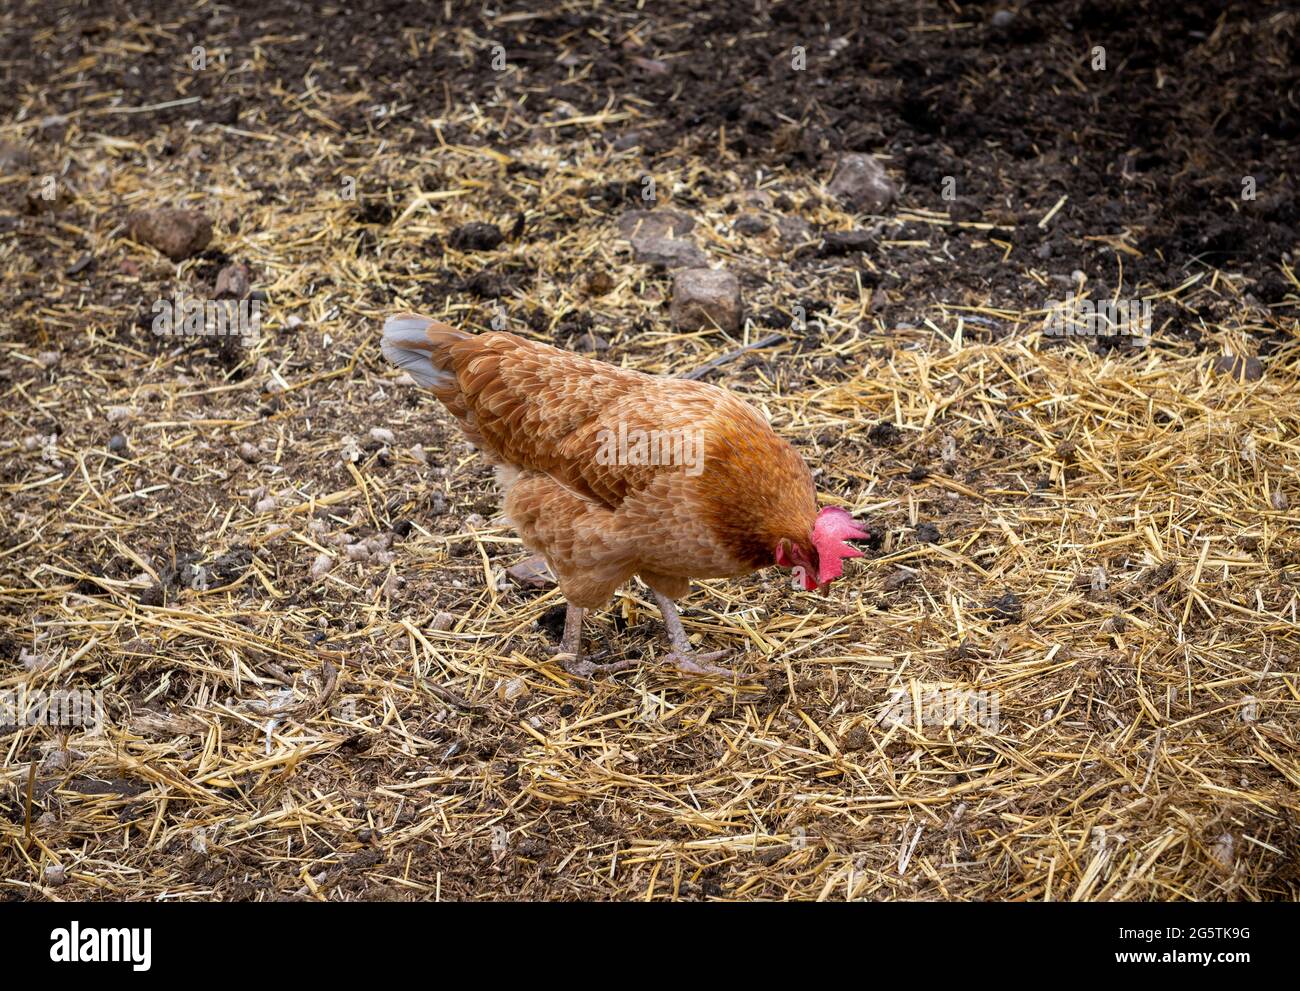 A freerange hen feeding in the field. Stock Photo